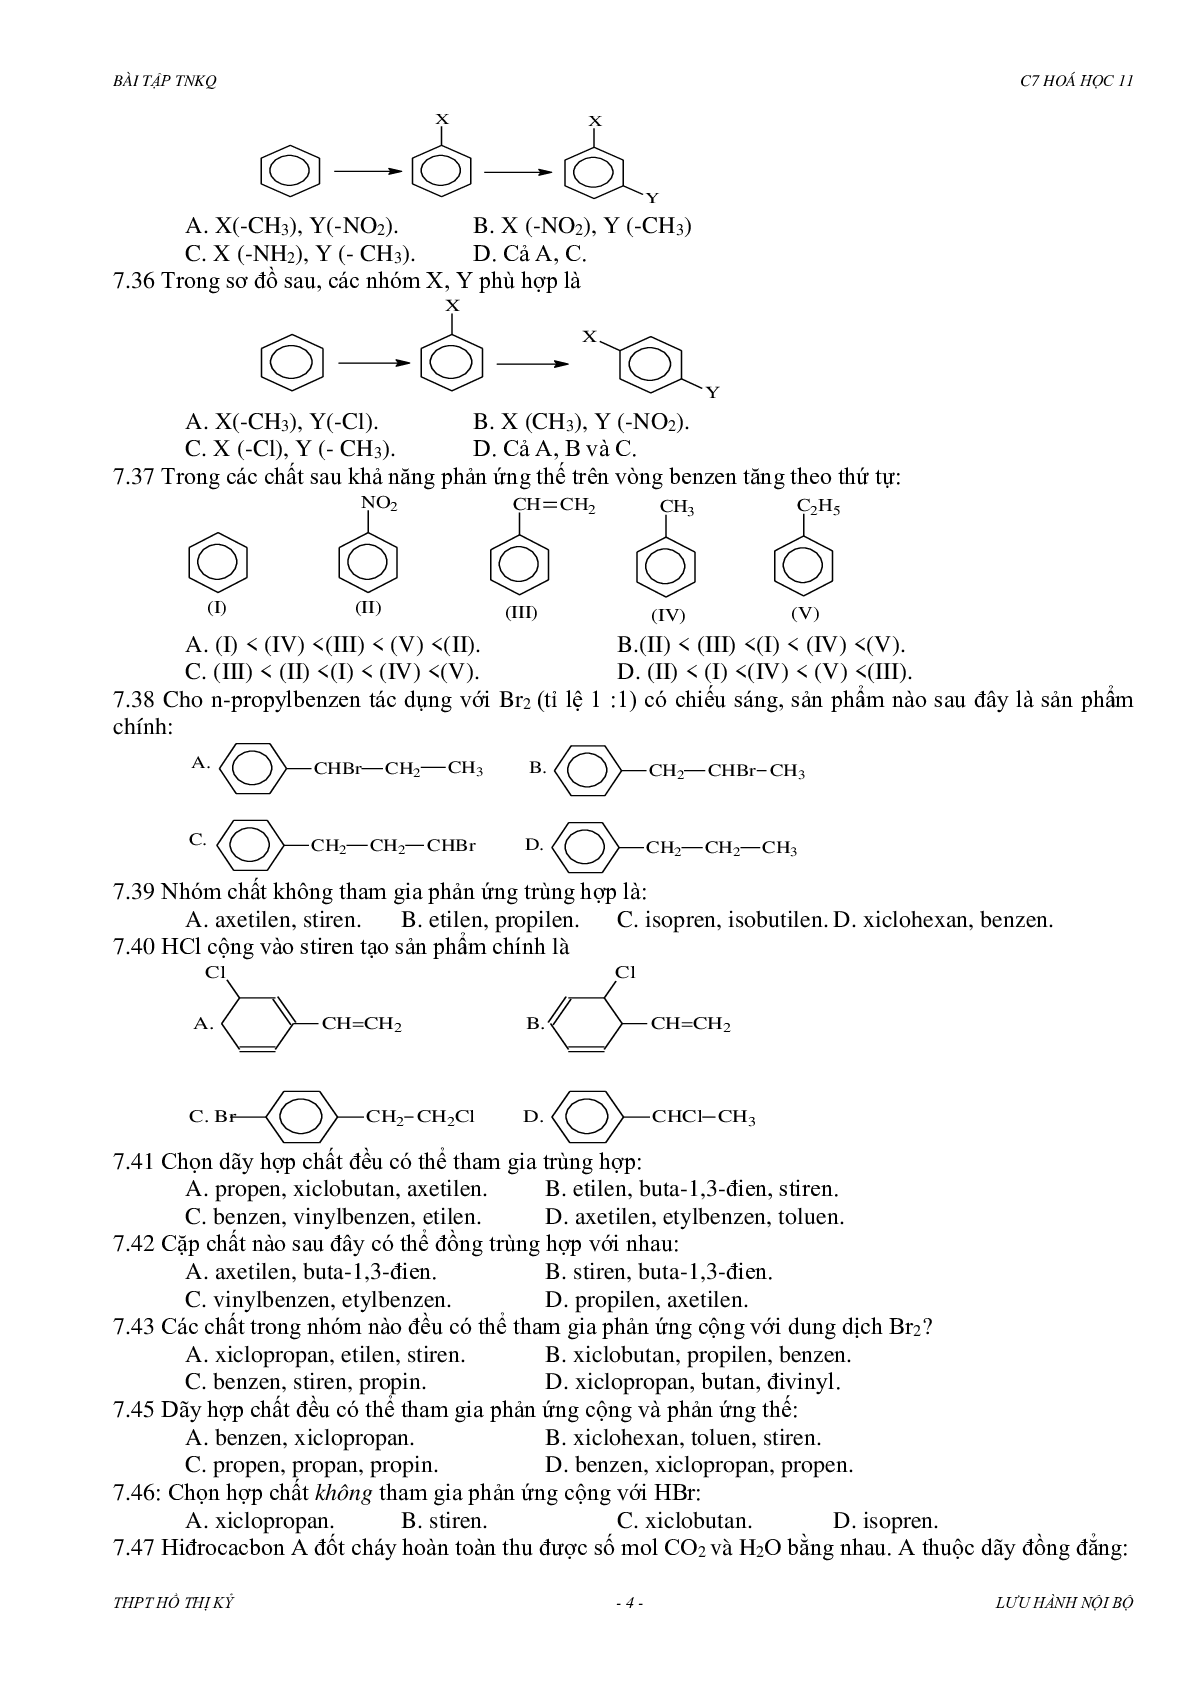 Bài tập về hidrocacbon thơm có đáp án, chọn lọc (trang 4)